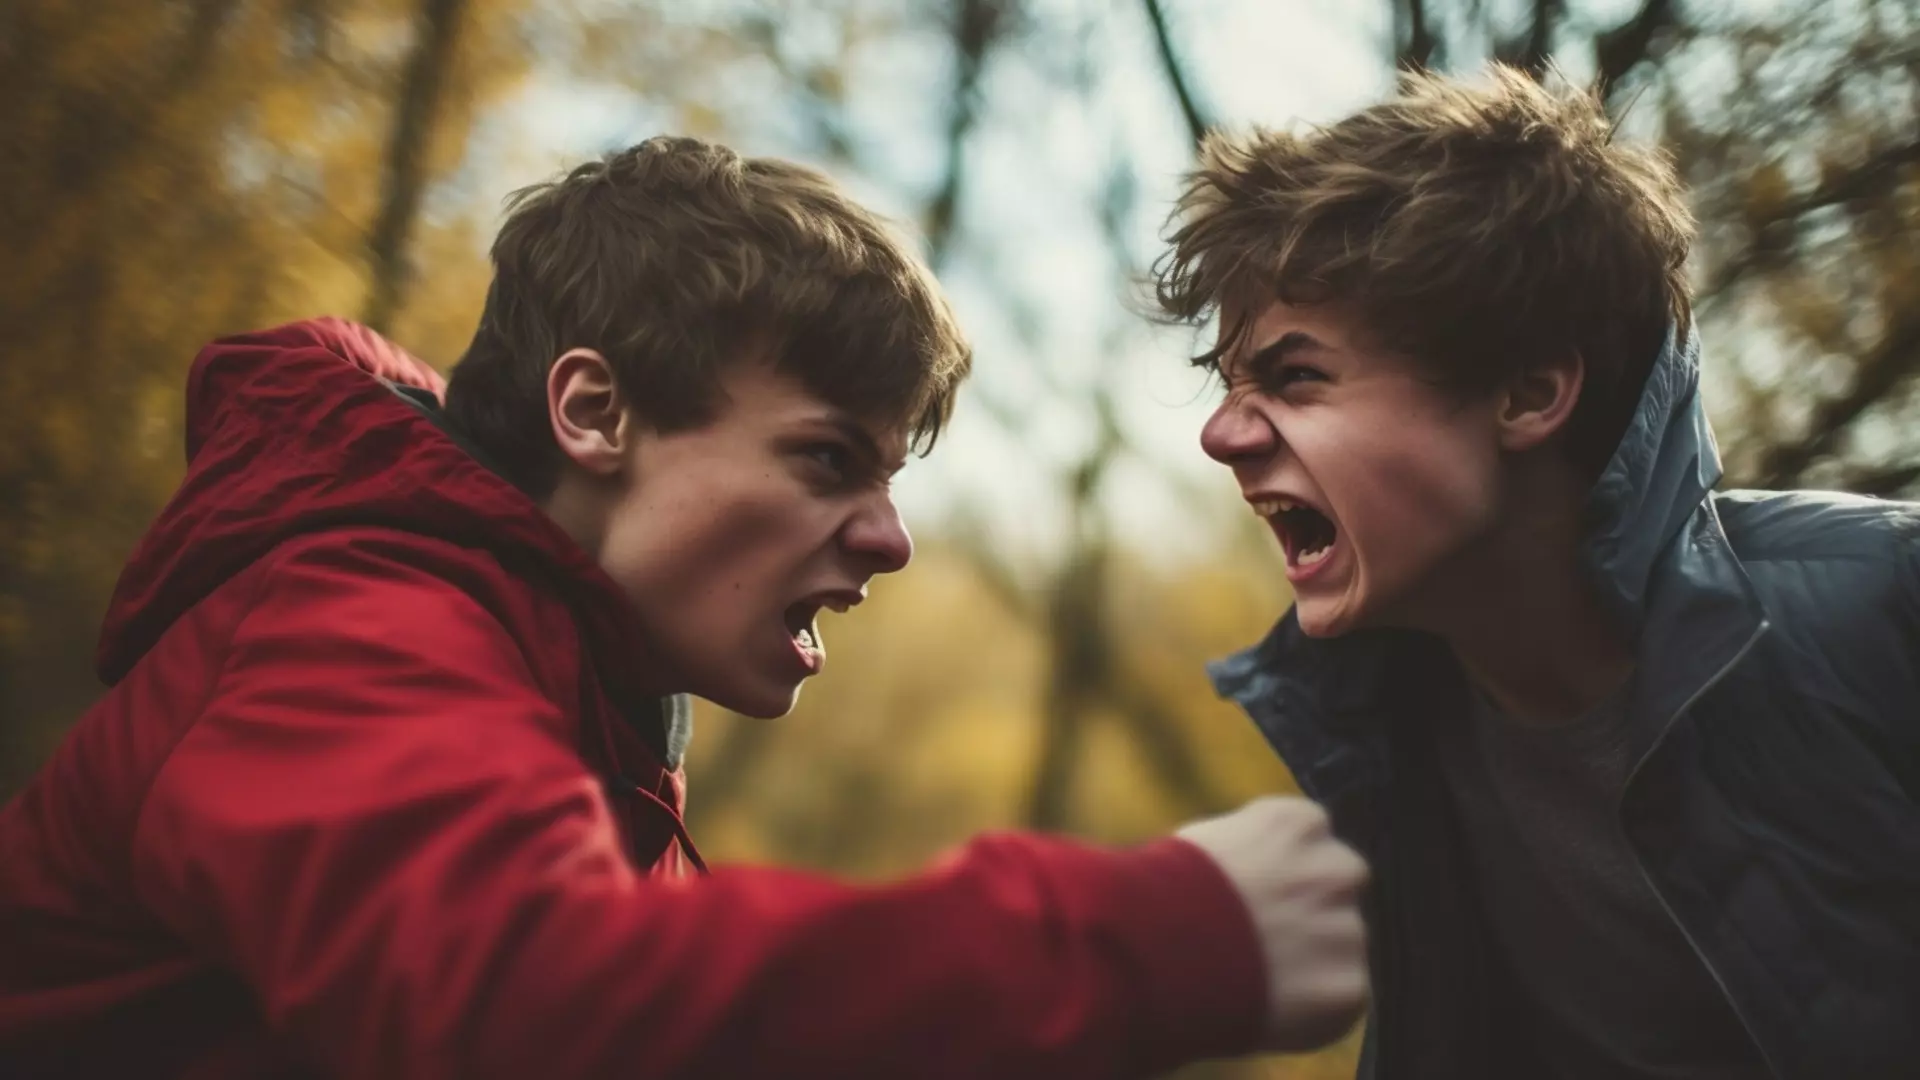 Ссора между подростками переросла в драку